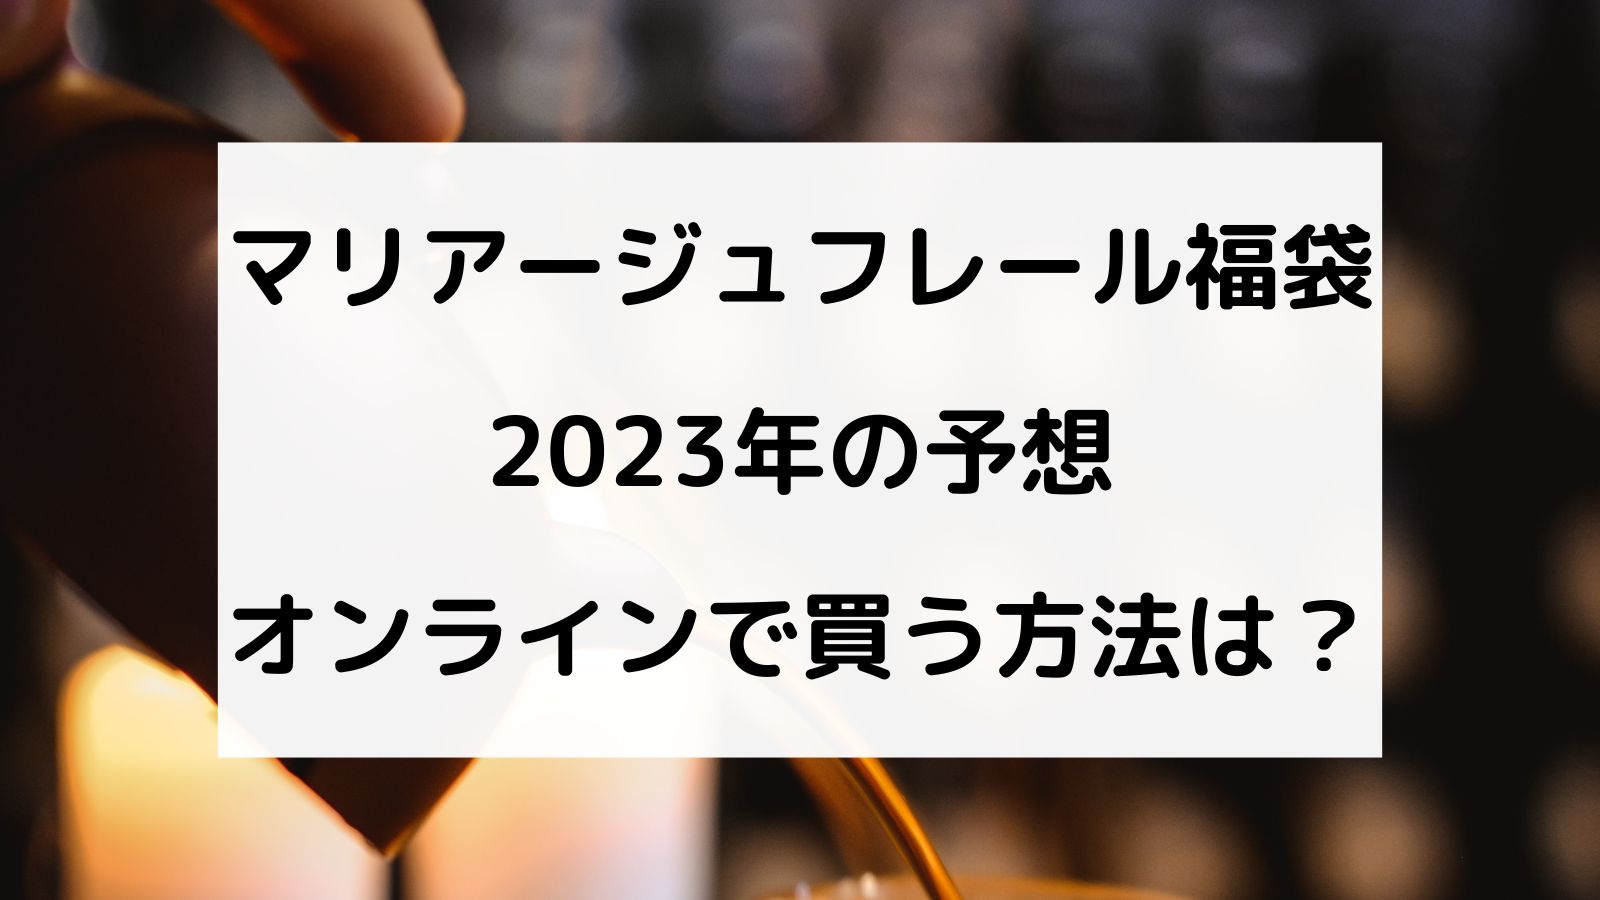 マリアージュフレール 2023 福袋 人気提案 7200円